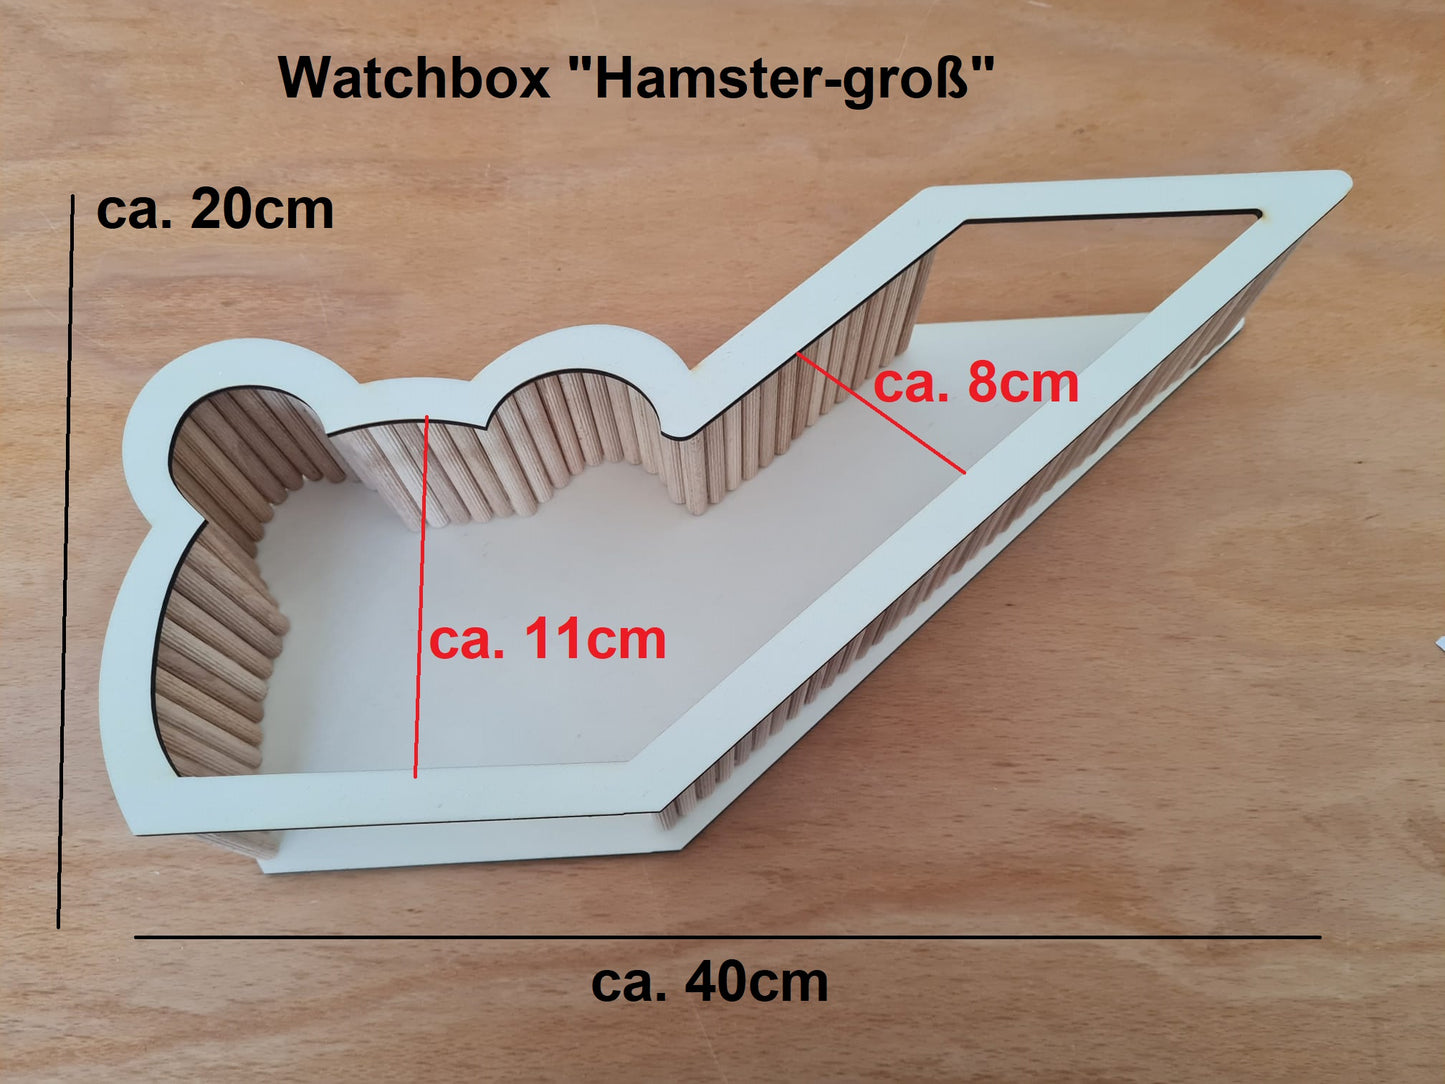 B-WARE BAUSATZ *Hamster-Groß* Watchbox für Kleinnager